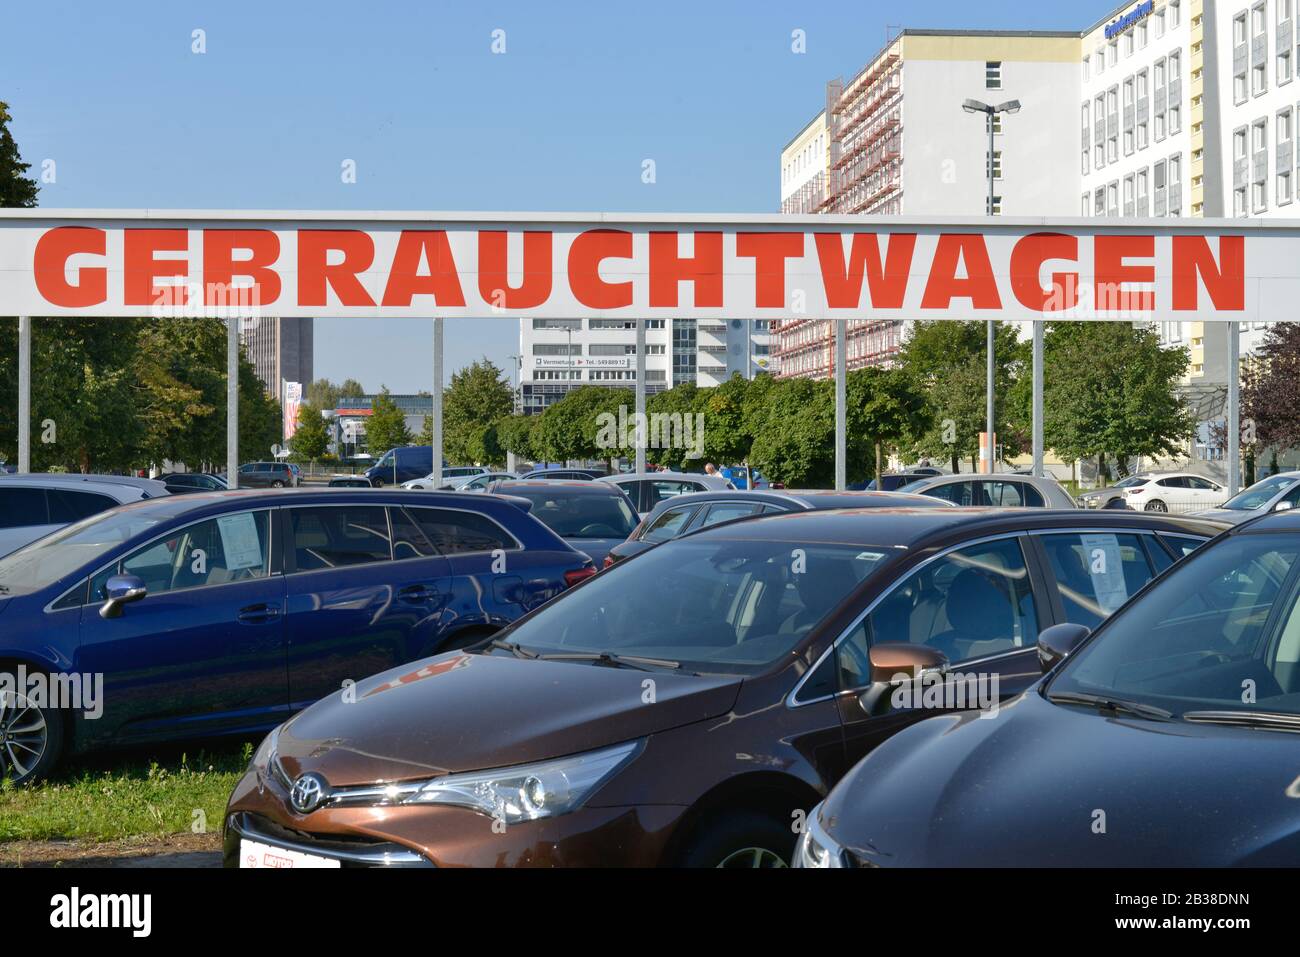 Gebrauchtwagen, Landsberger Allee, Marzahn, Berlin, Deutschland Stock Photo